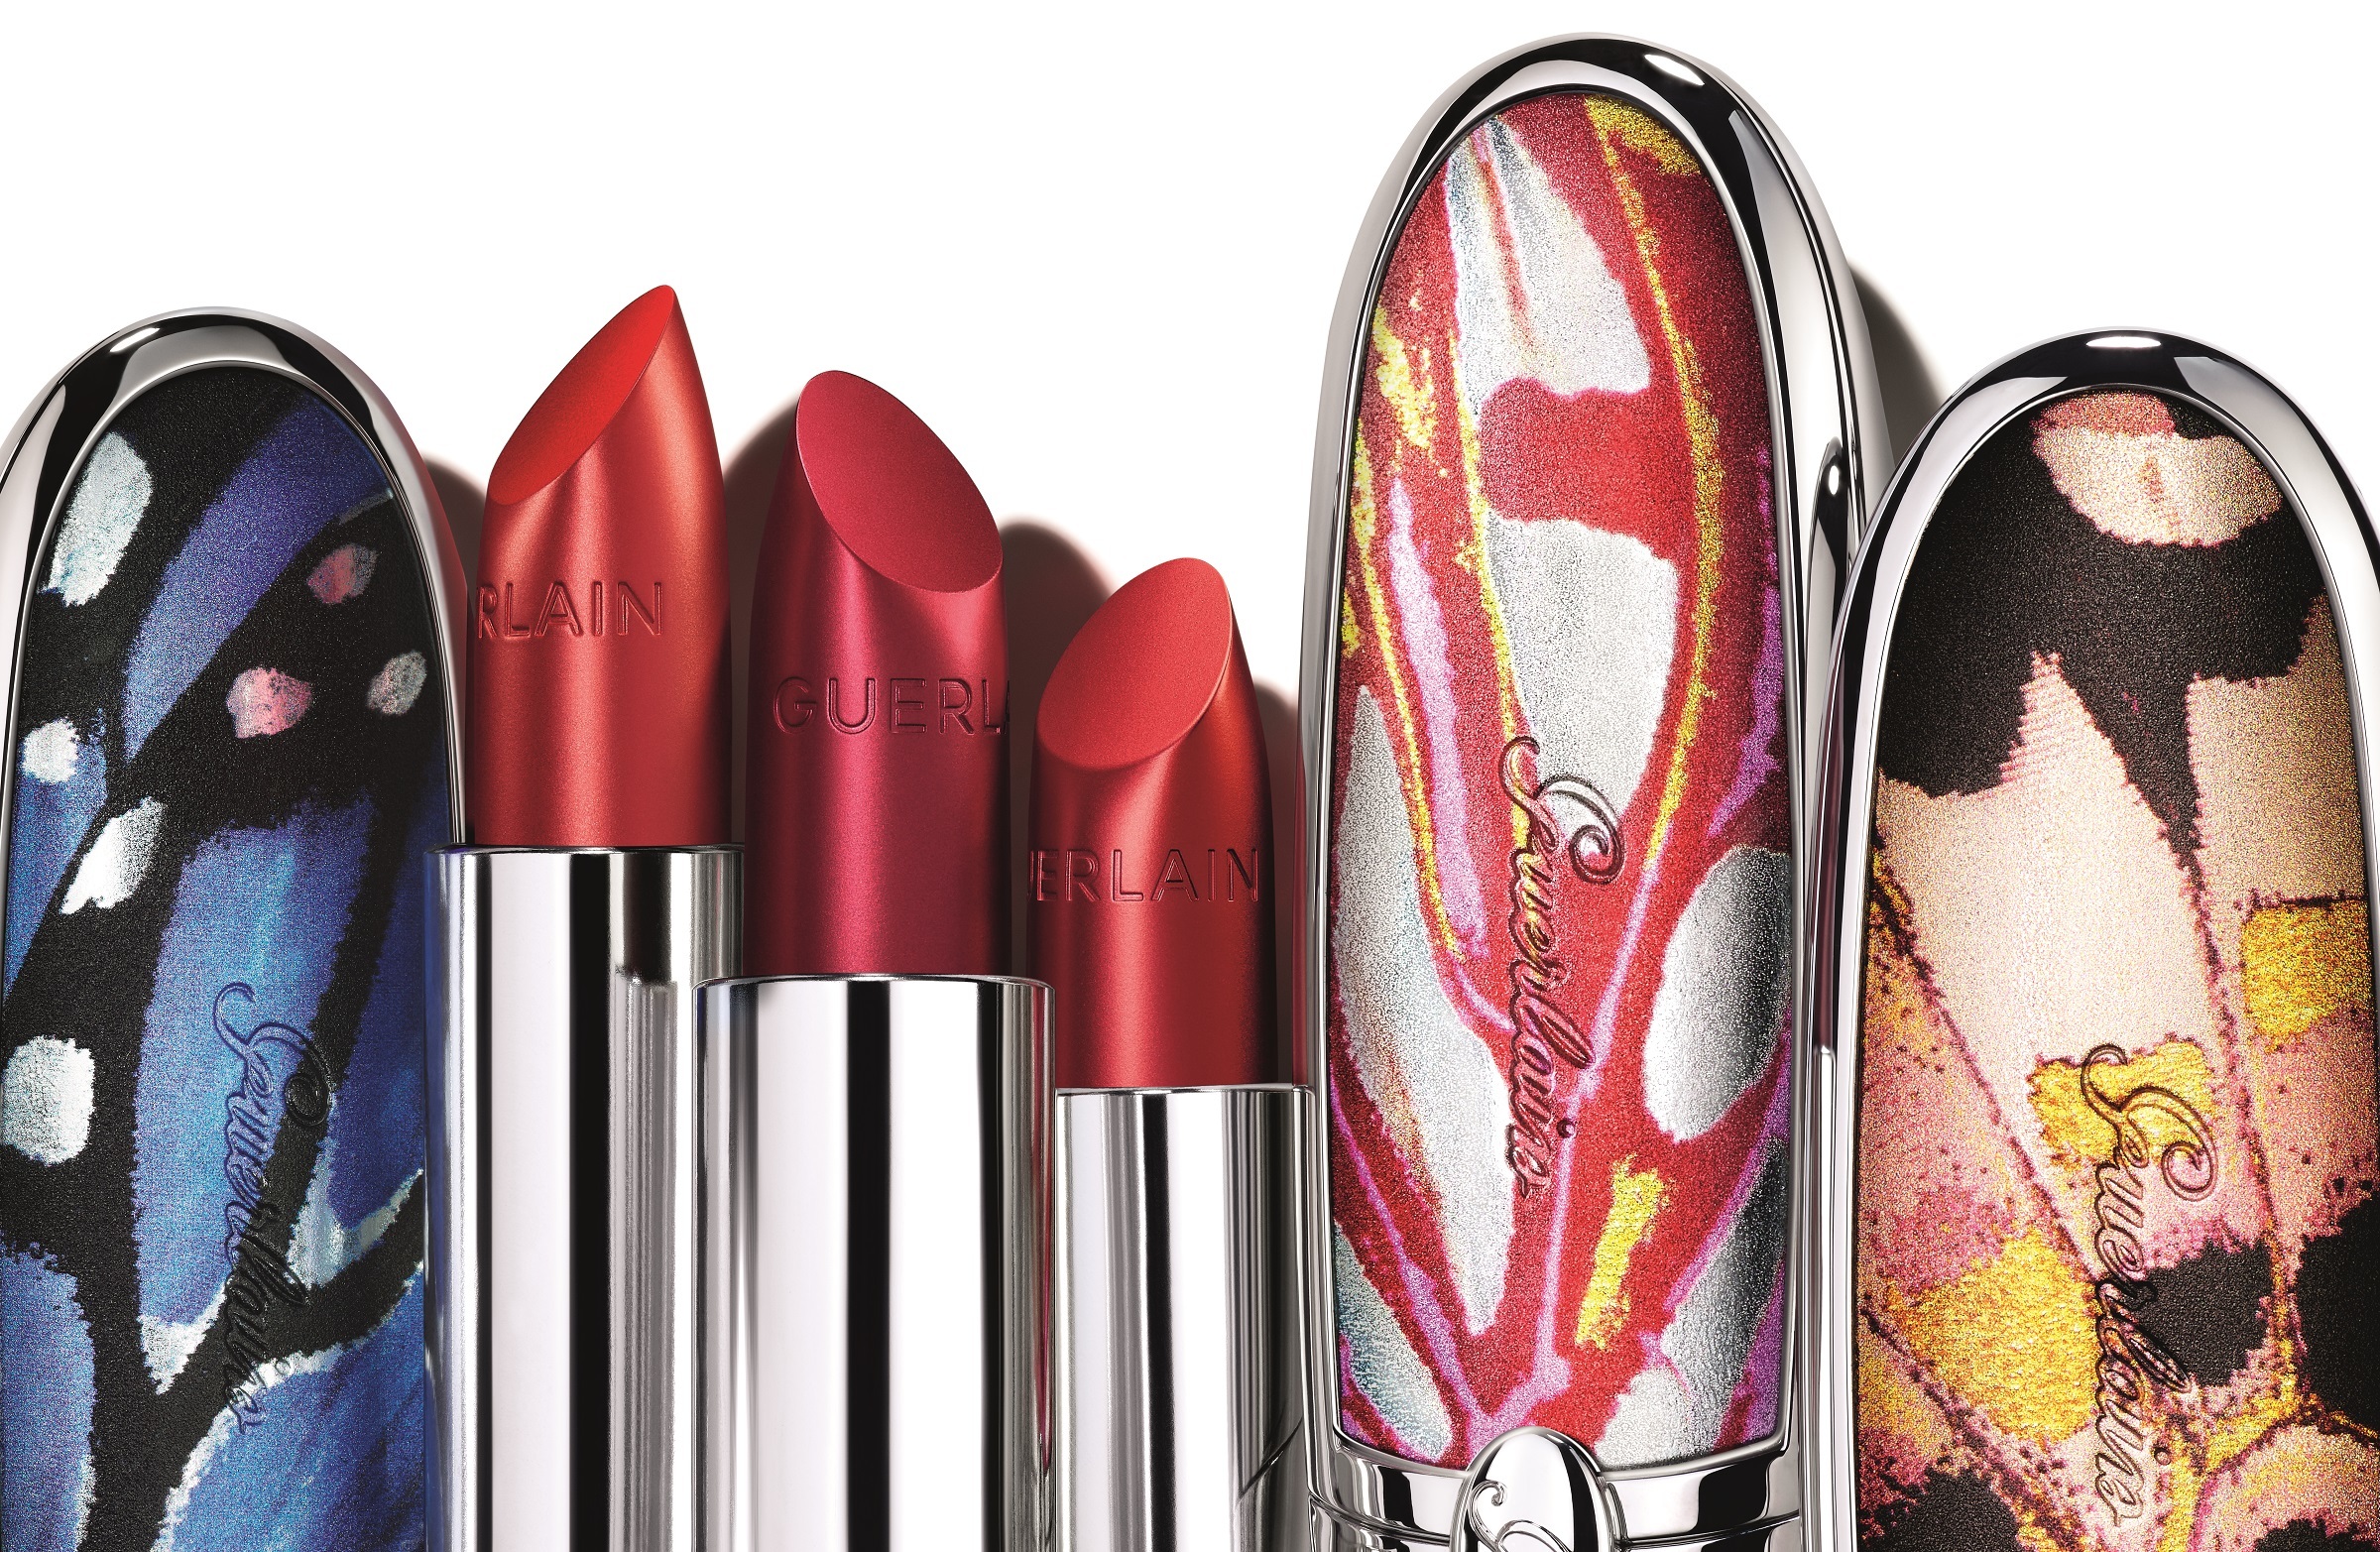 La coleccin de barras de labios rojos creadas por Violette para Guerlain, Rouge G Luxurios Velvet Metals, con carcasas intercambiables y personalizables (desde 22 euros).